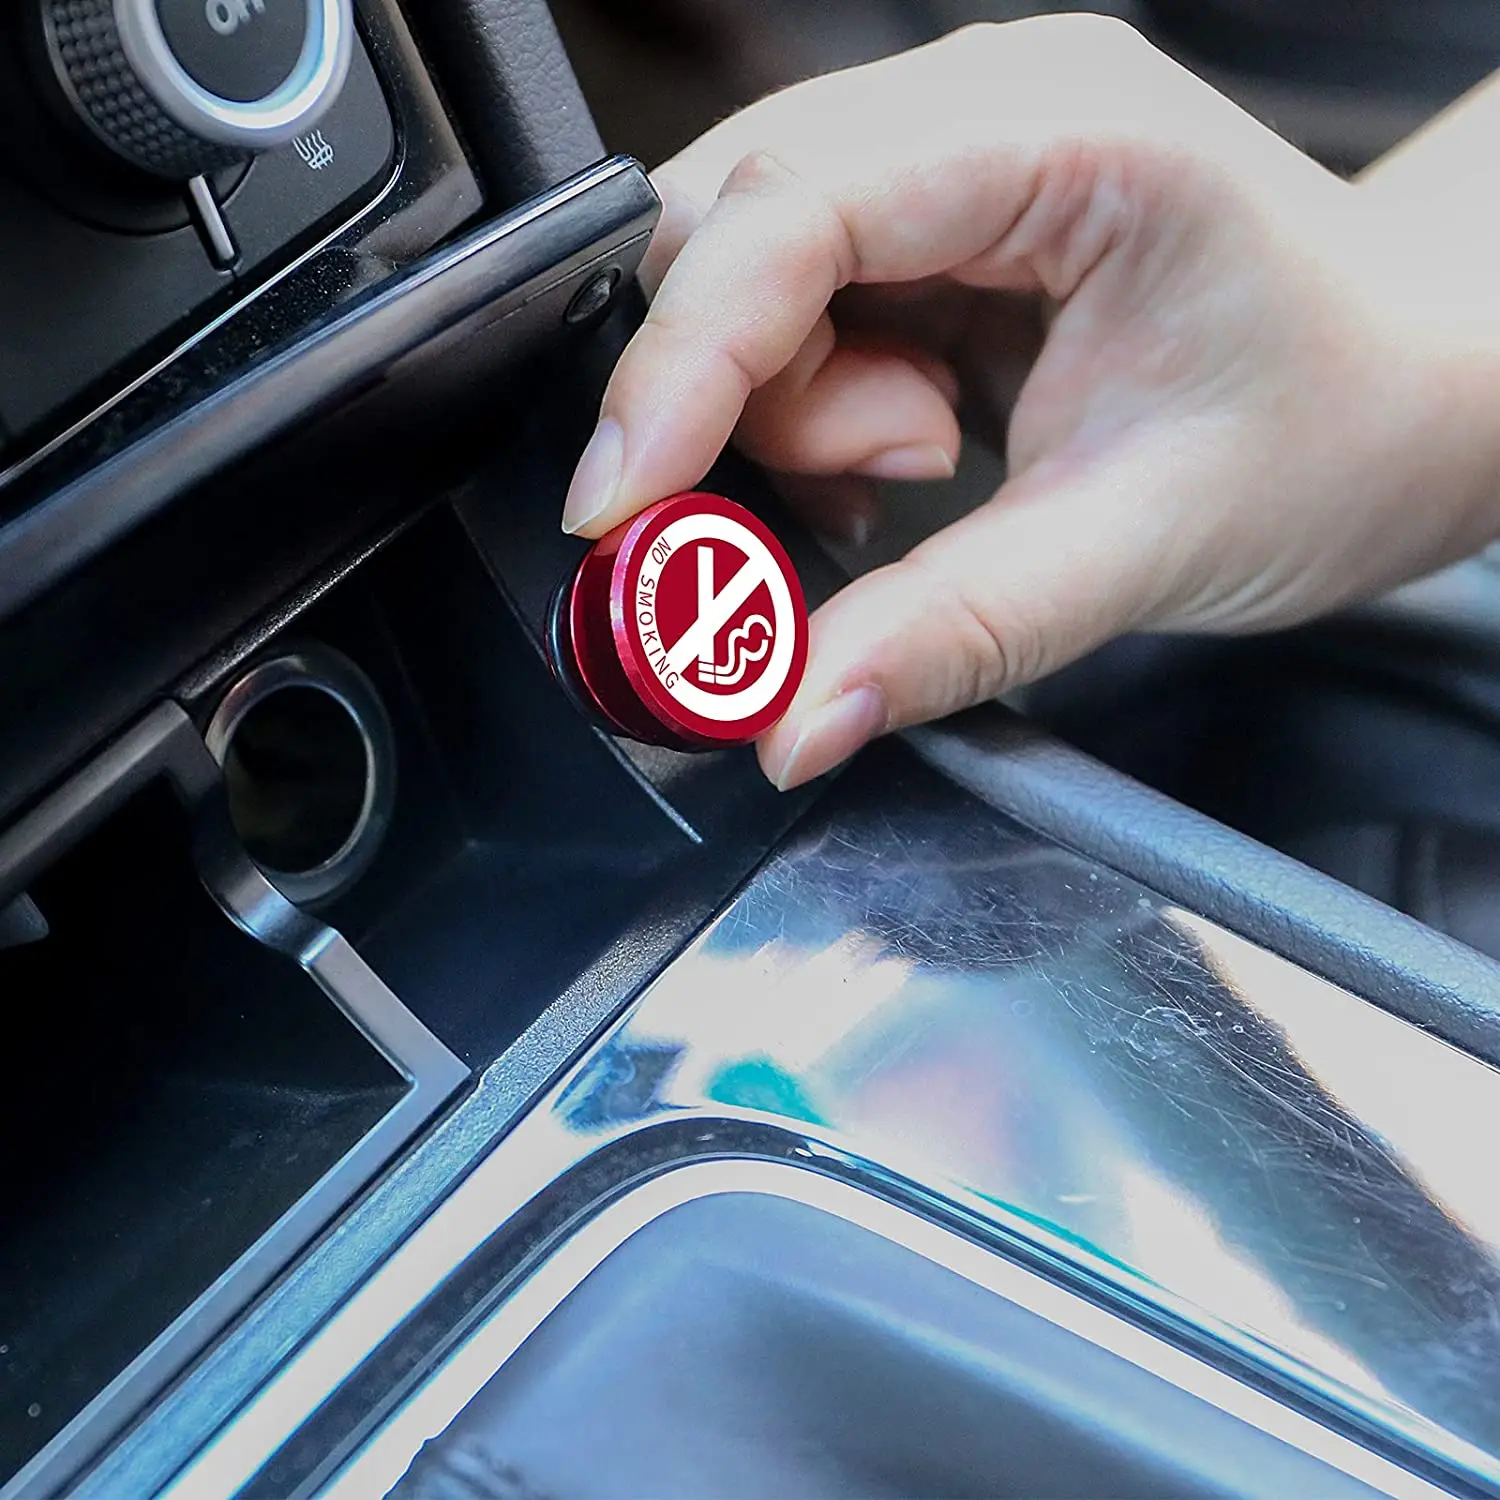 2 Piese de Aluminiu Bricheta Auto Plug de Înlocuire FUMATUL interzis Buton Buton Universale se Potrivește cele Mai multe Autovehicule 5